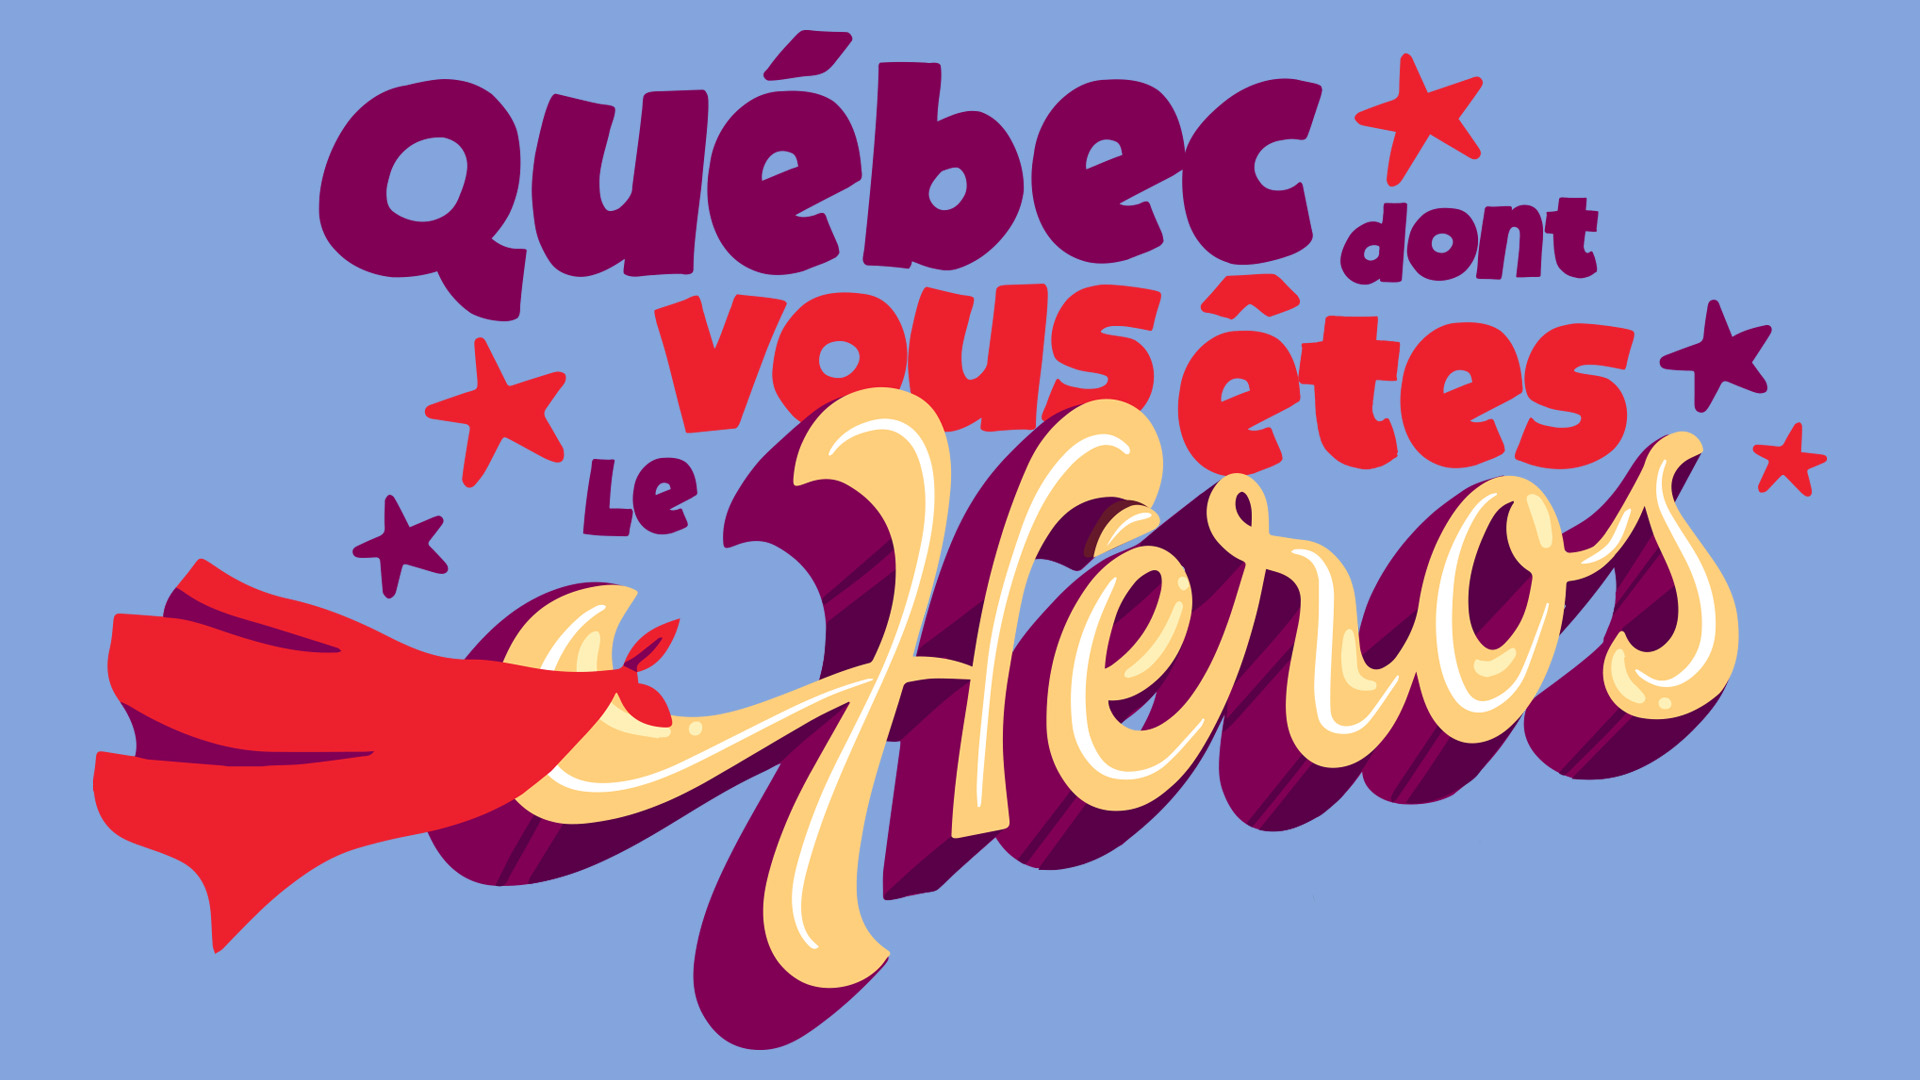 Québec dont vous êtes le héros